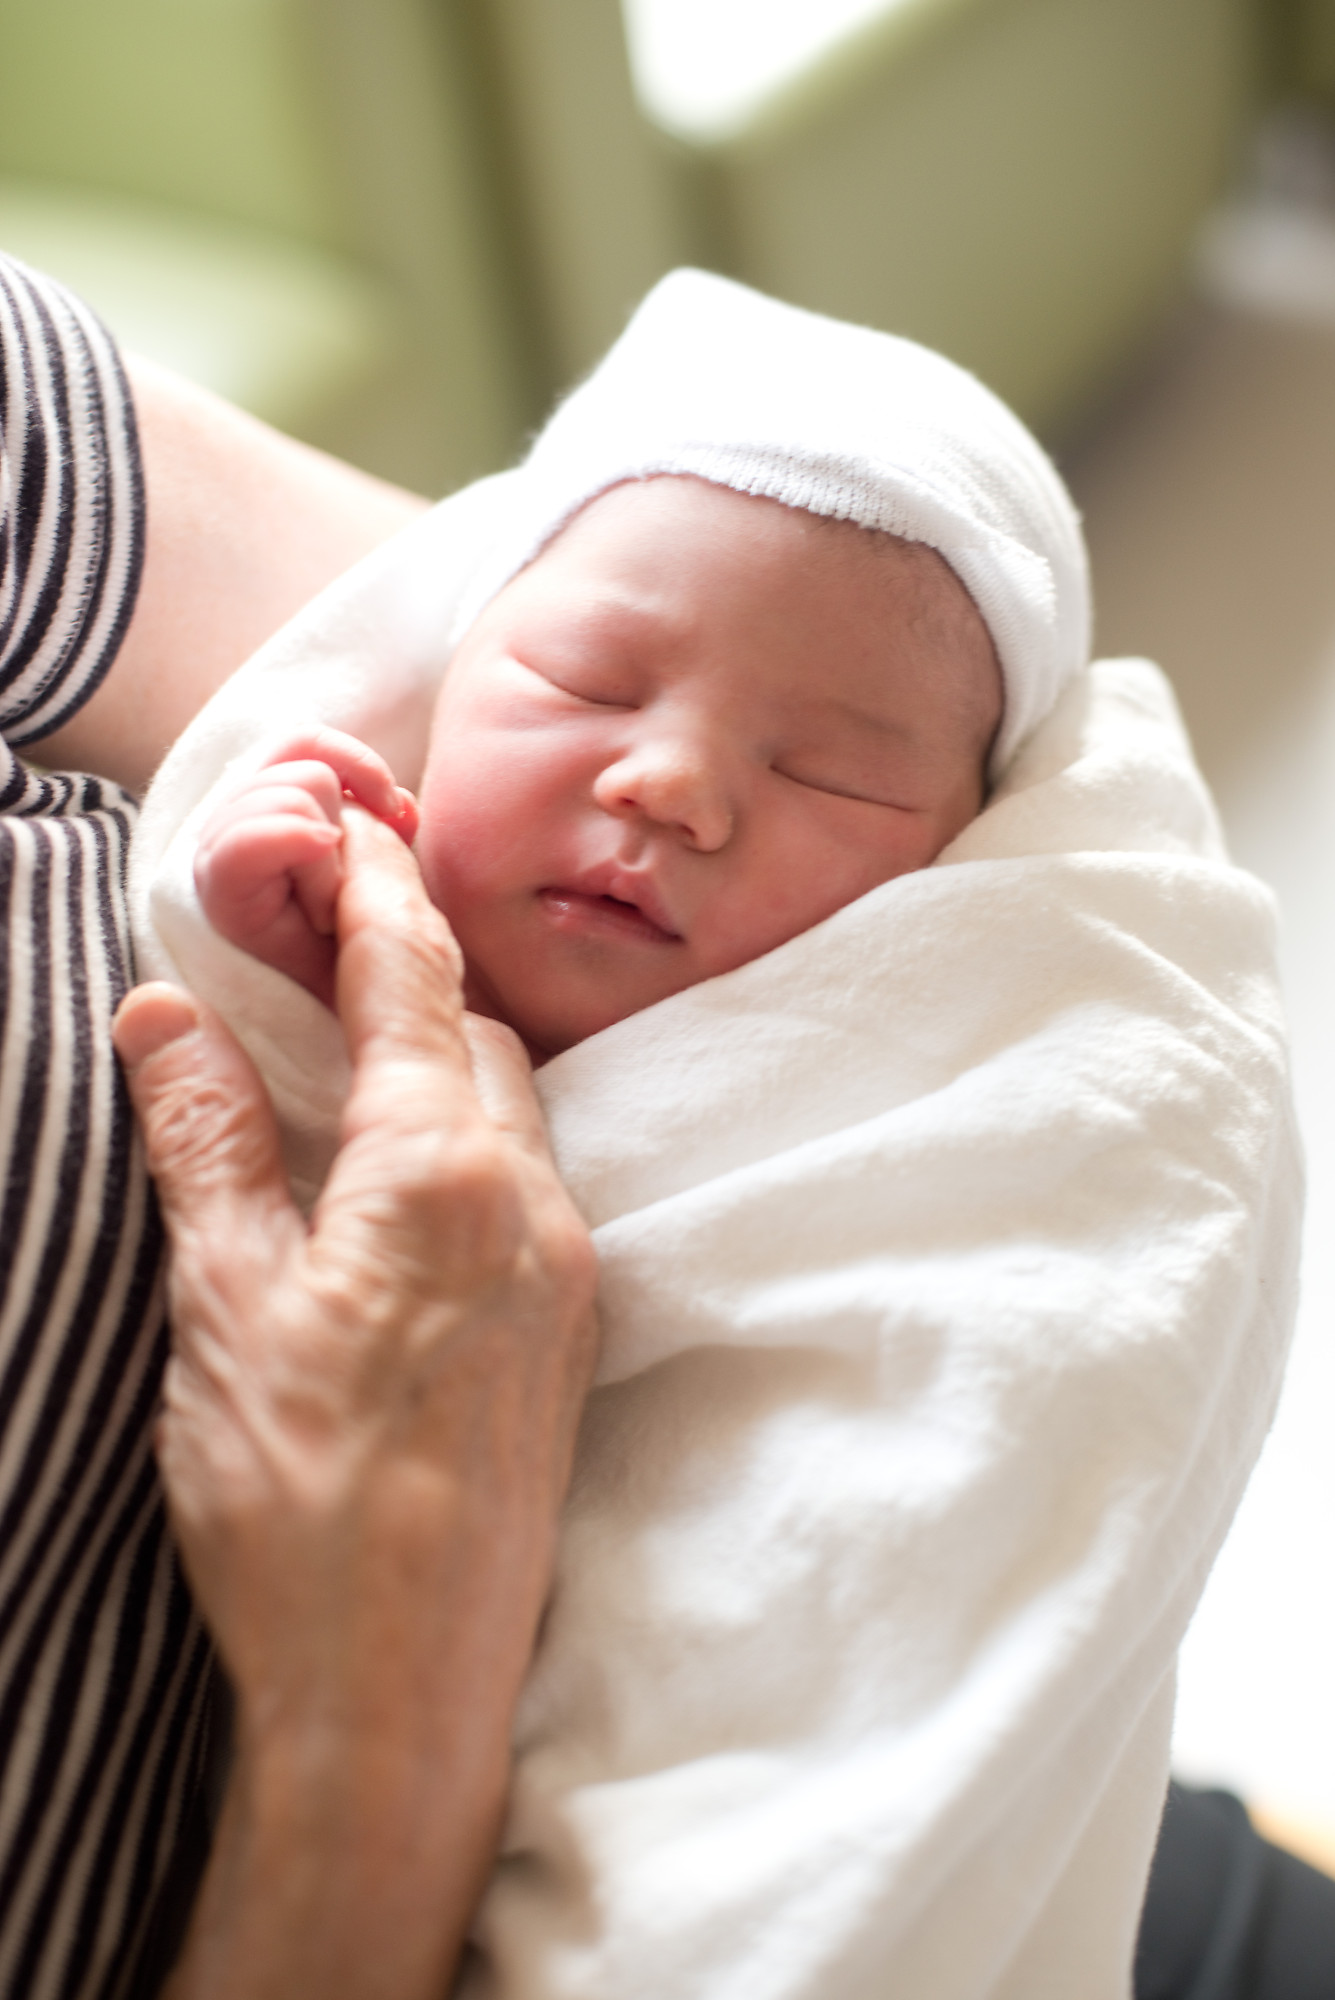 Сонник новорожденный на руках. Новорожденный ребенок. Грудной ребенок. Новорожденный на руках. Новорождённые дети на руках.